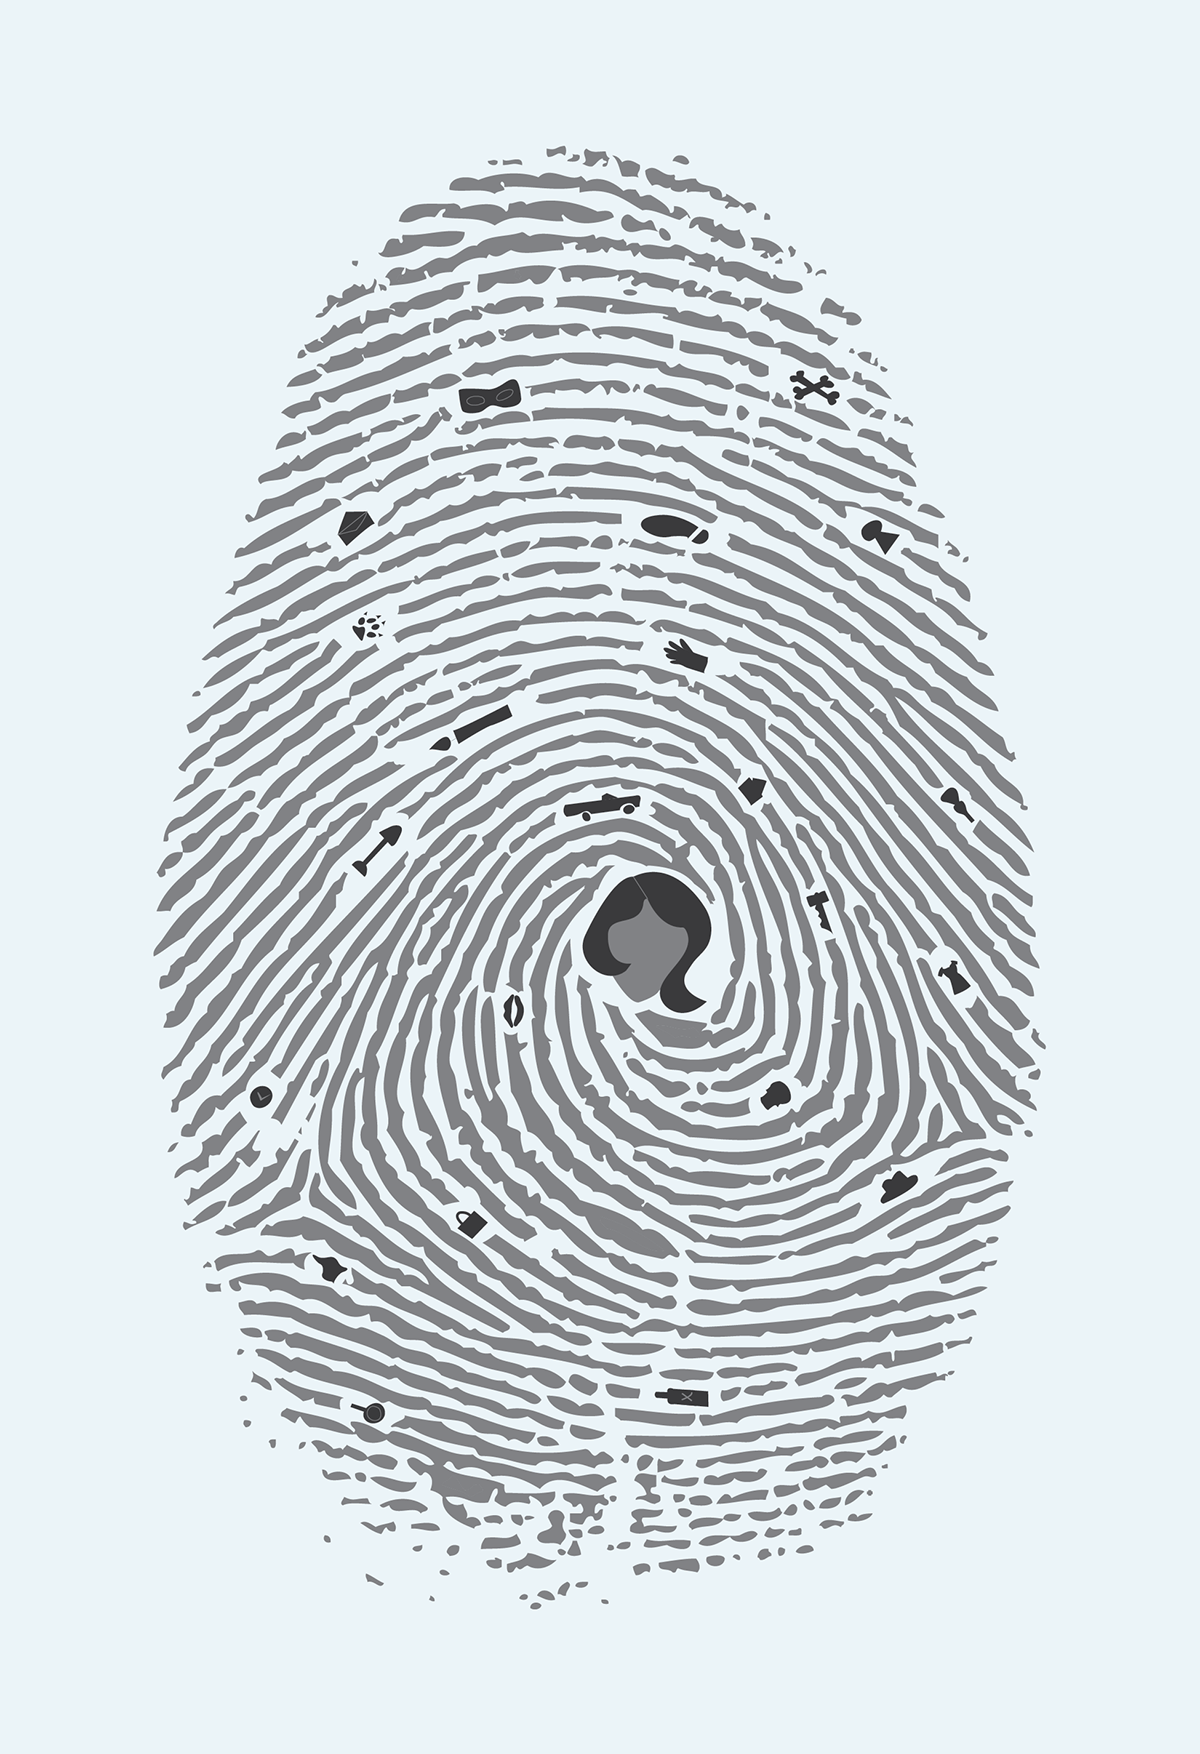 Nancy Drew  wonderland  alice in  cheshire cat mystery fingerprint books Children's Books fiction posters